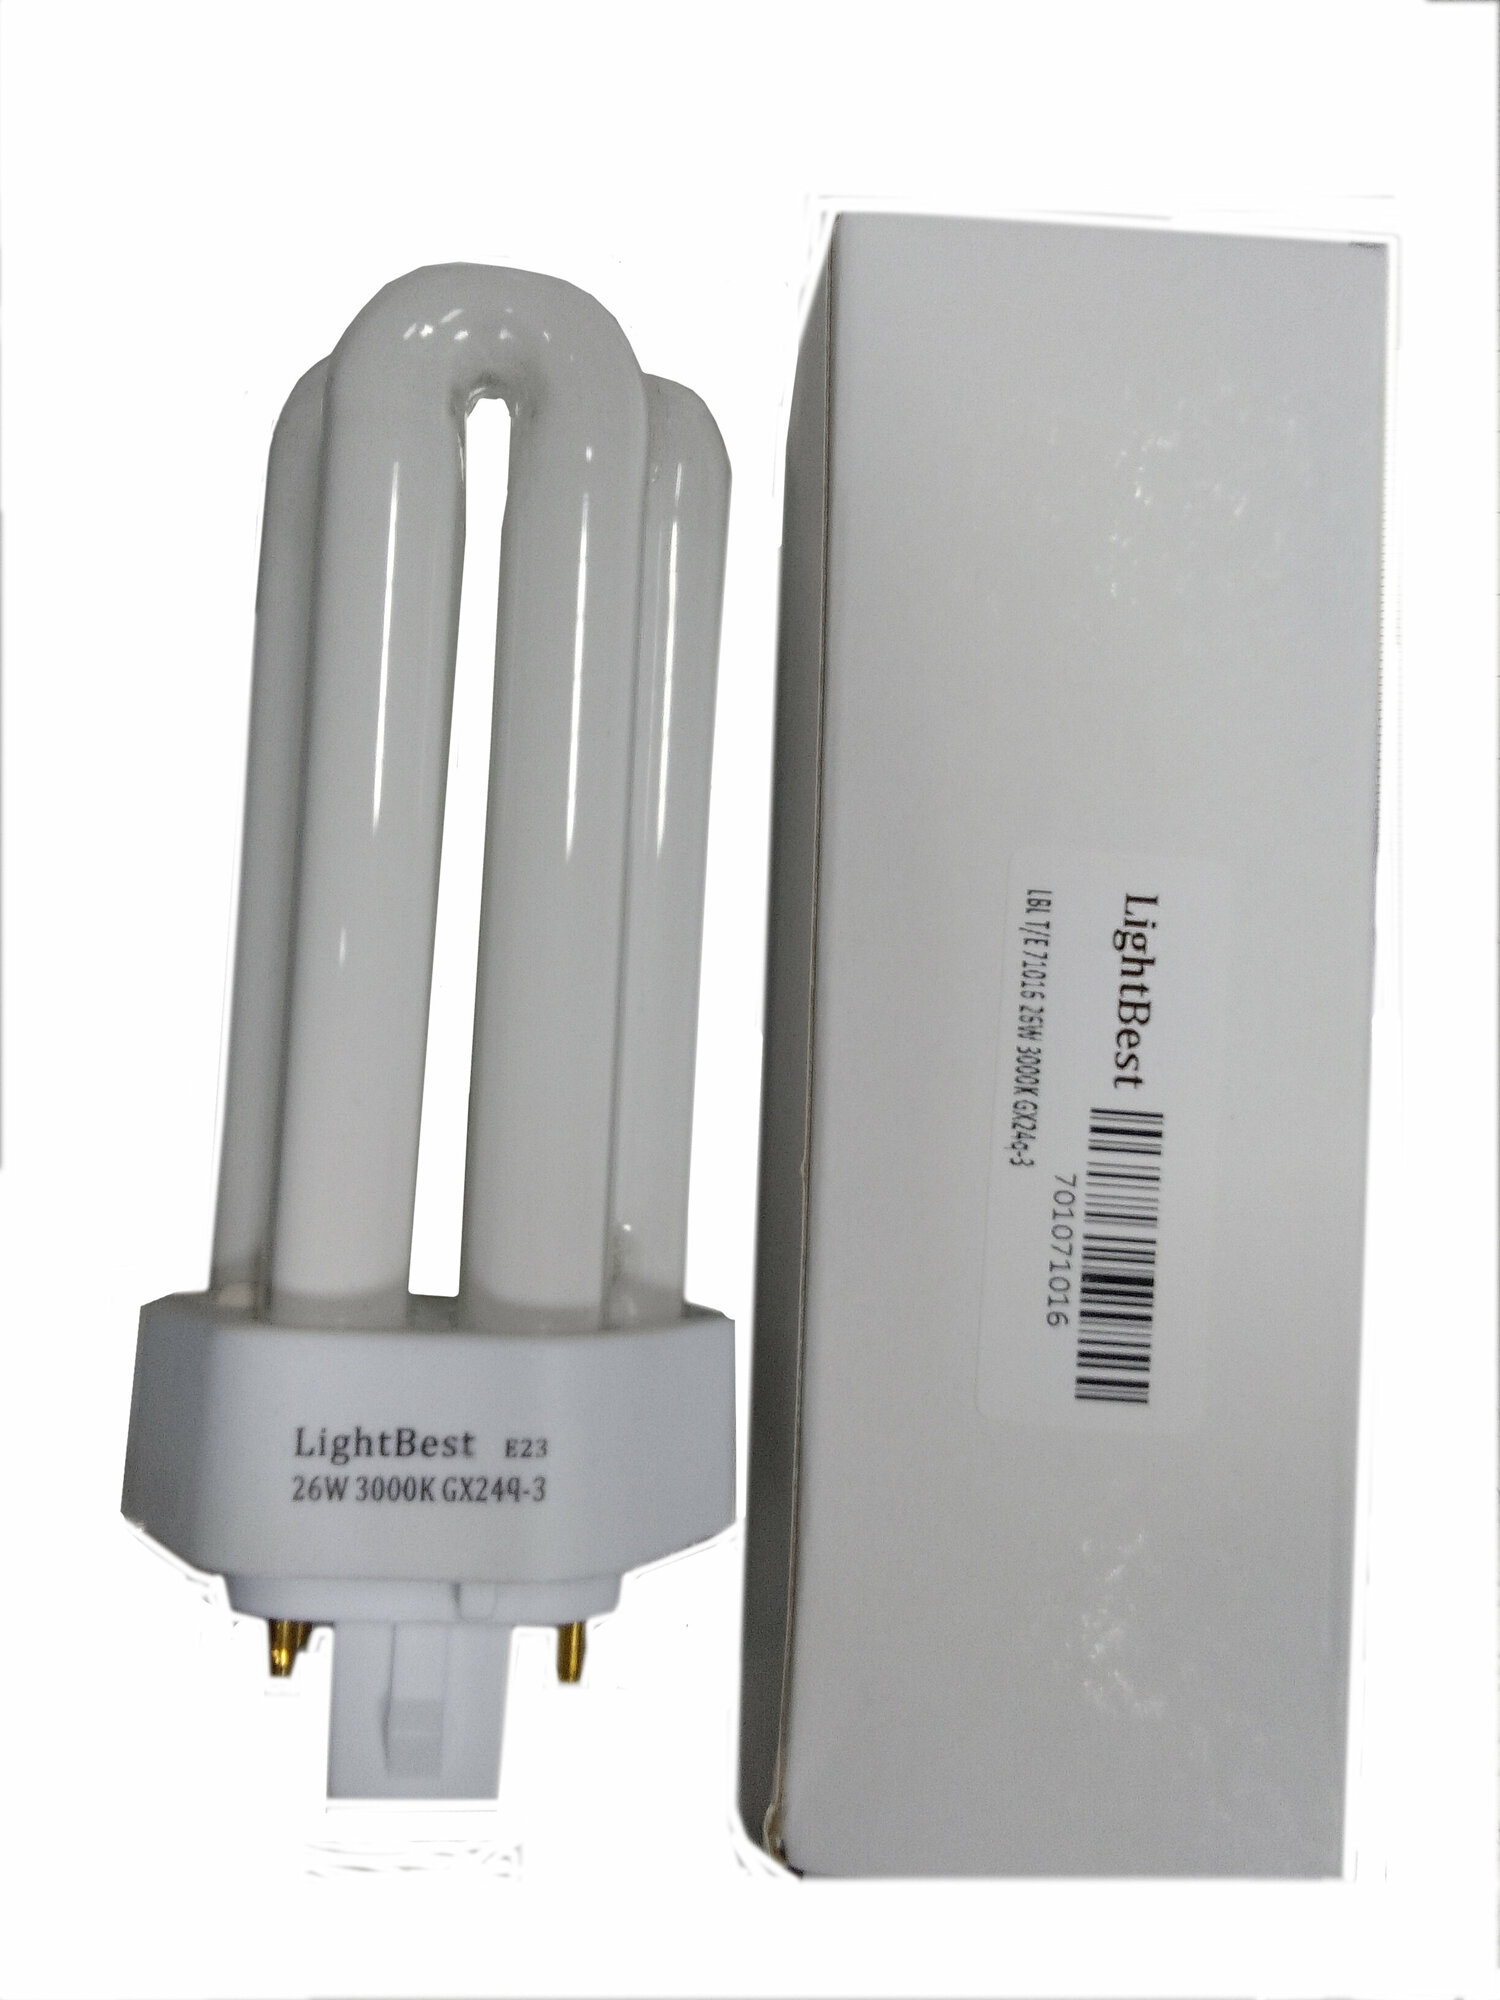 Лампа люминесцентная LightBest LBL T/E 71016 26W 3000K GX24q-3 (Dulux T/E Plus 26W/31-830 GX24q-3) 701071016